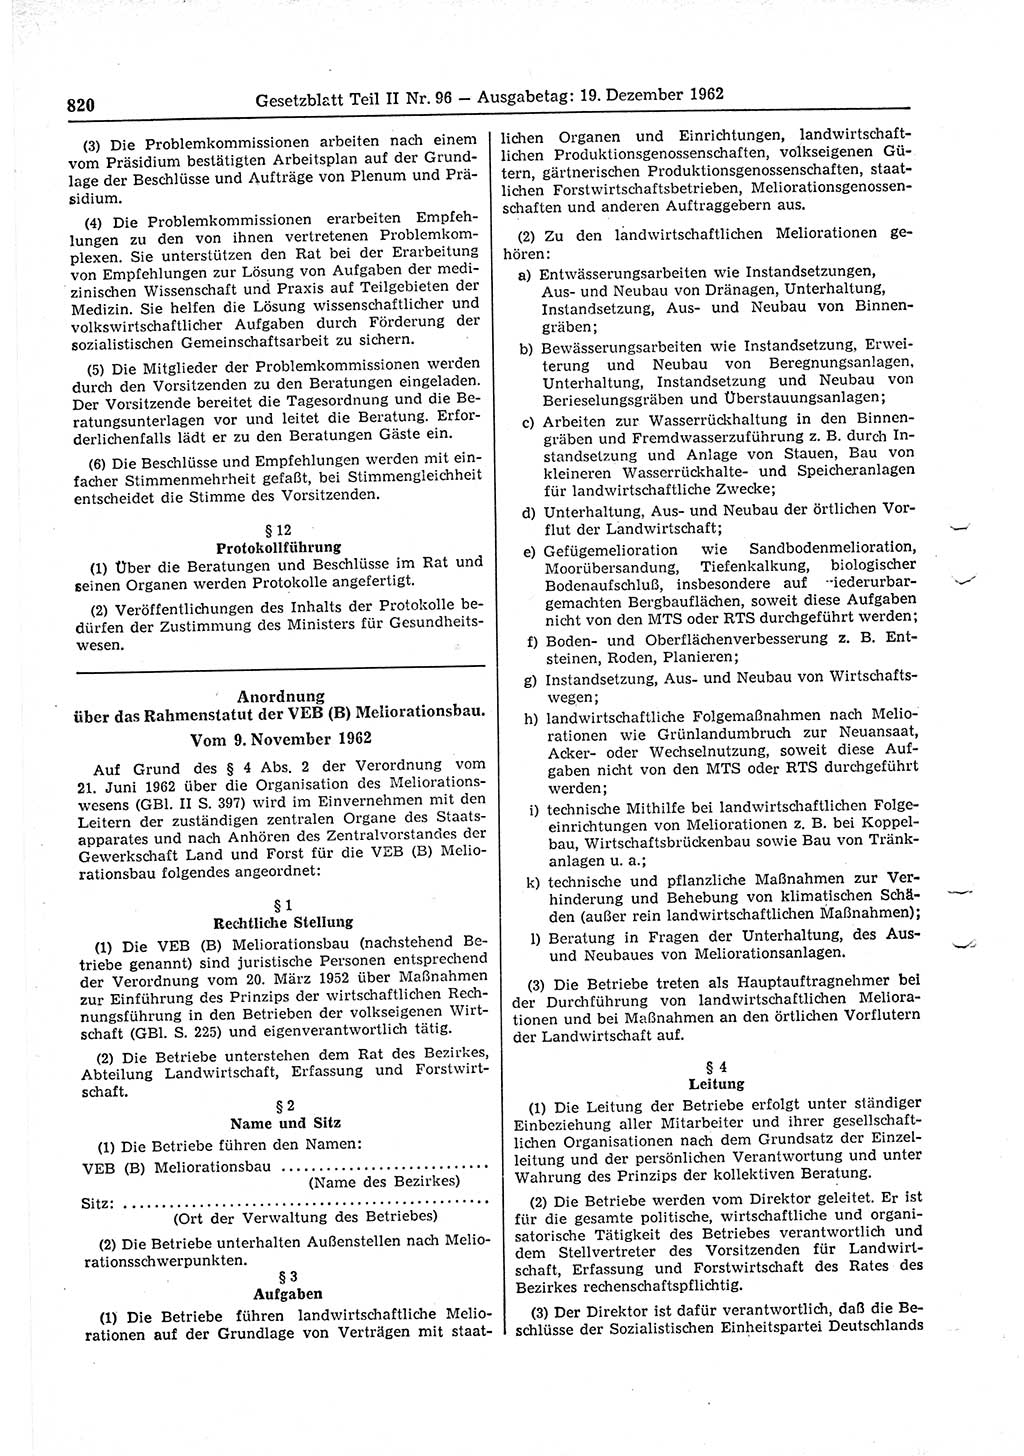 Gesetzblatt (GBl.) der Deutschen Demokratischen Republik (DDR) Teil ⅠⅠ 1962, Seite 820 (GBl. DDR ⅠⅠ 1962, S. 820)